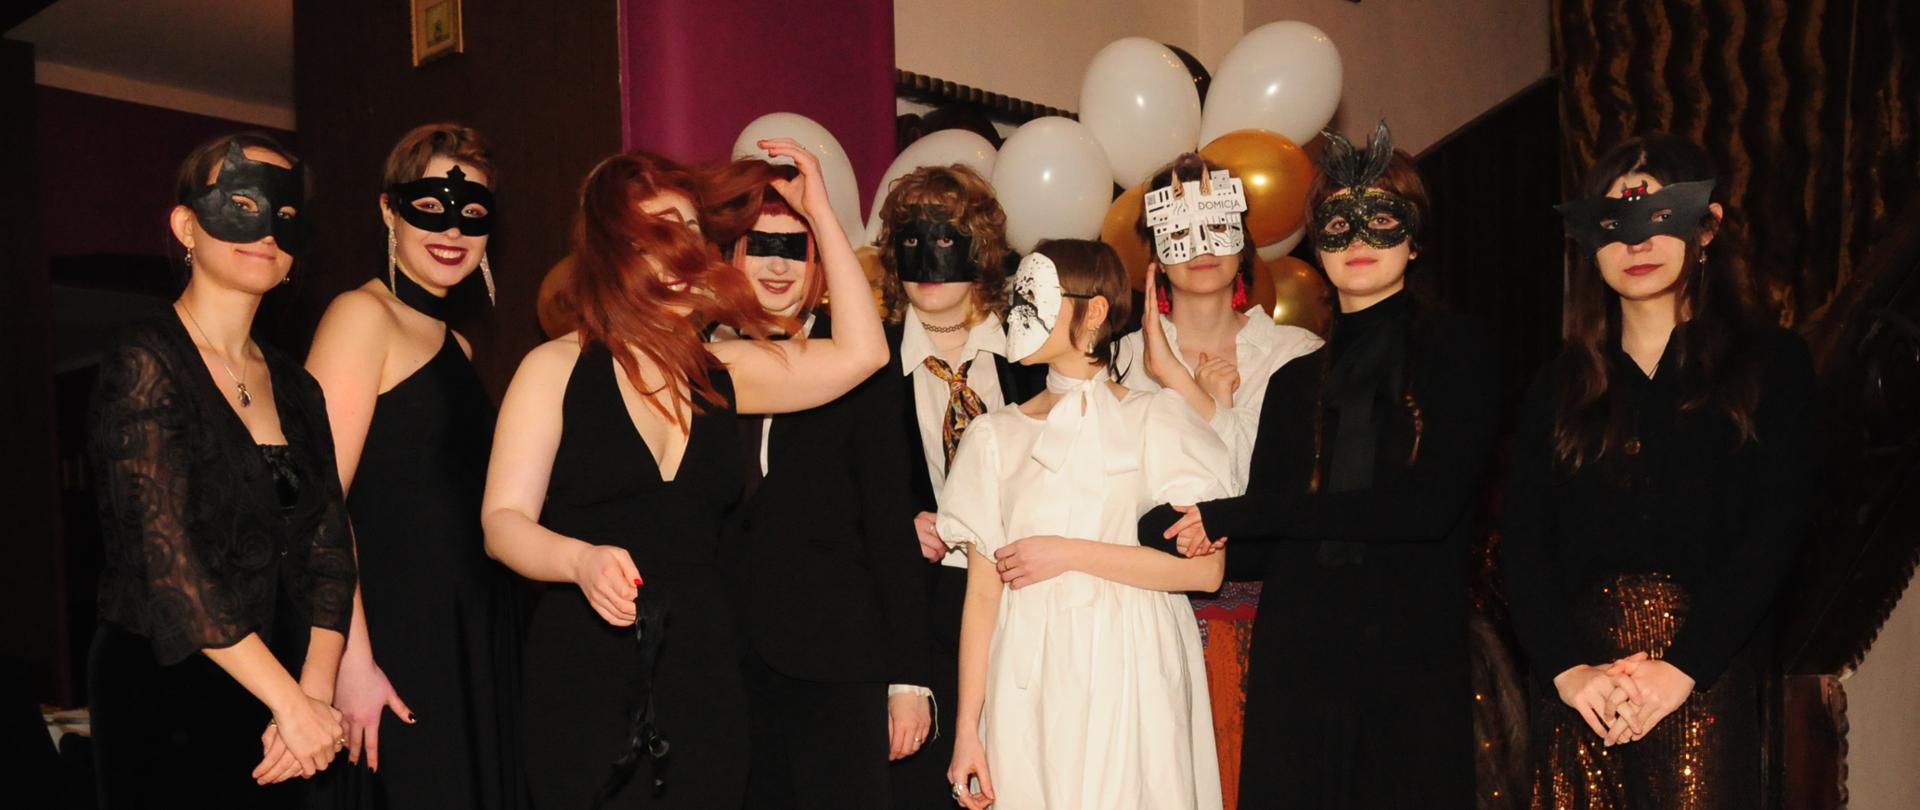 Zdjęcie grupowe uczniów PLSP w maskach karnawałowych